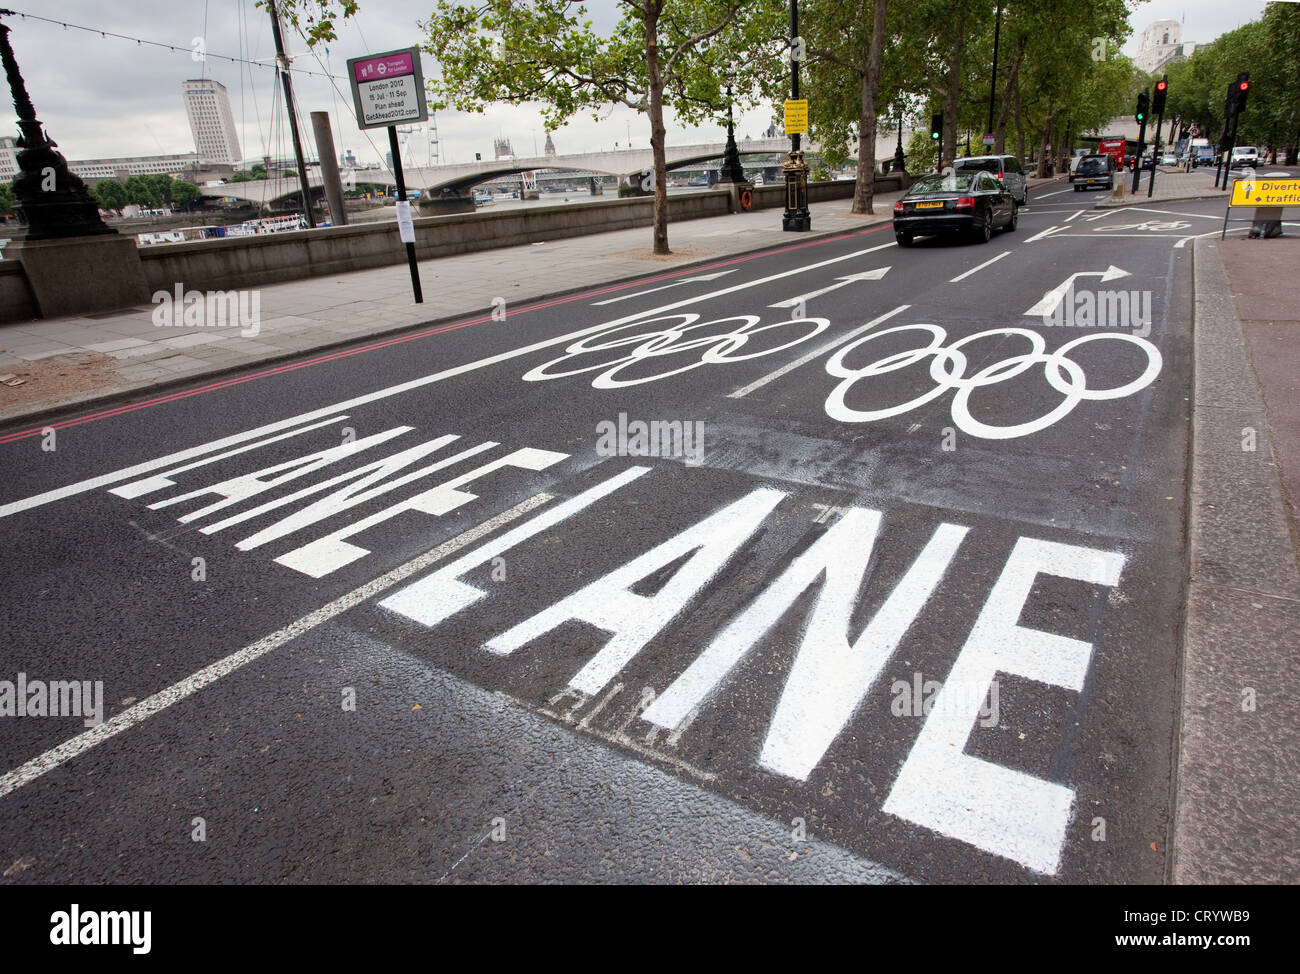 Jeux olympiques sur Victoria Embankment pour les athlètes et officiels d'éviter les embouteillages lors de Jeux olympiques de Londres en 2012. Banque D'Images